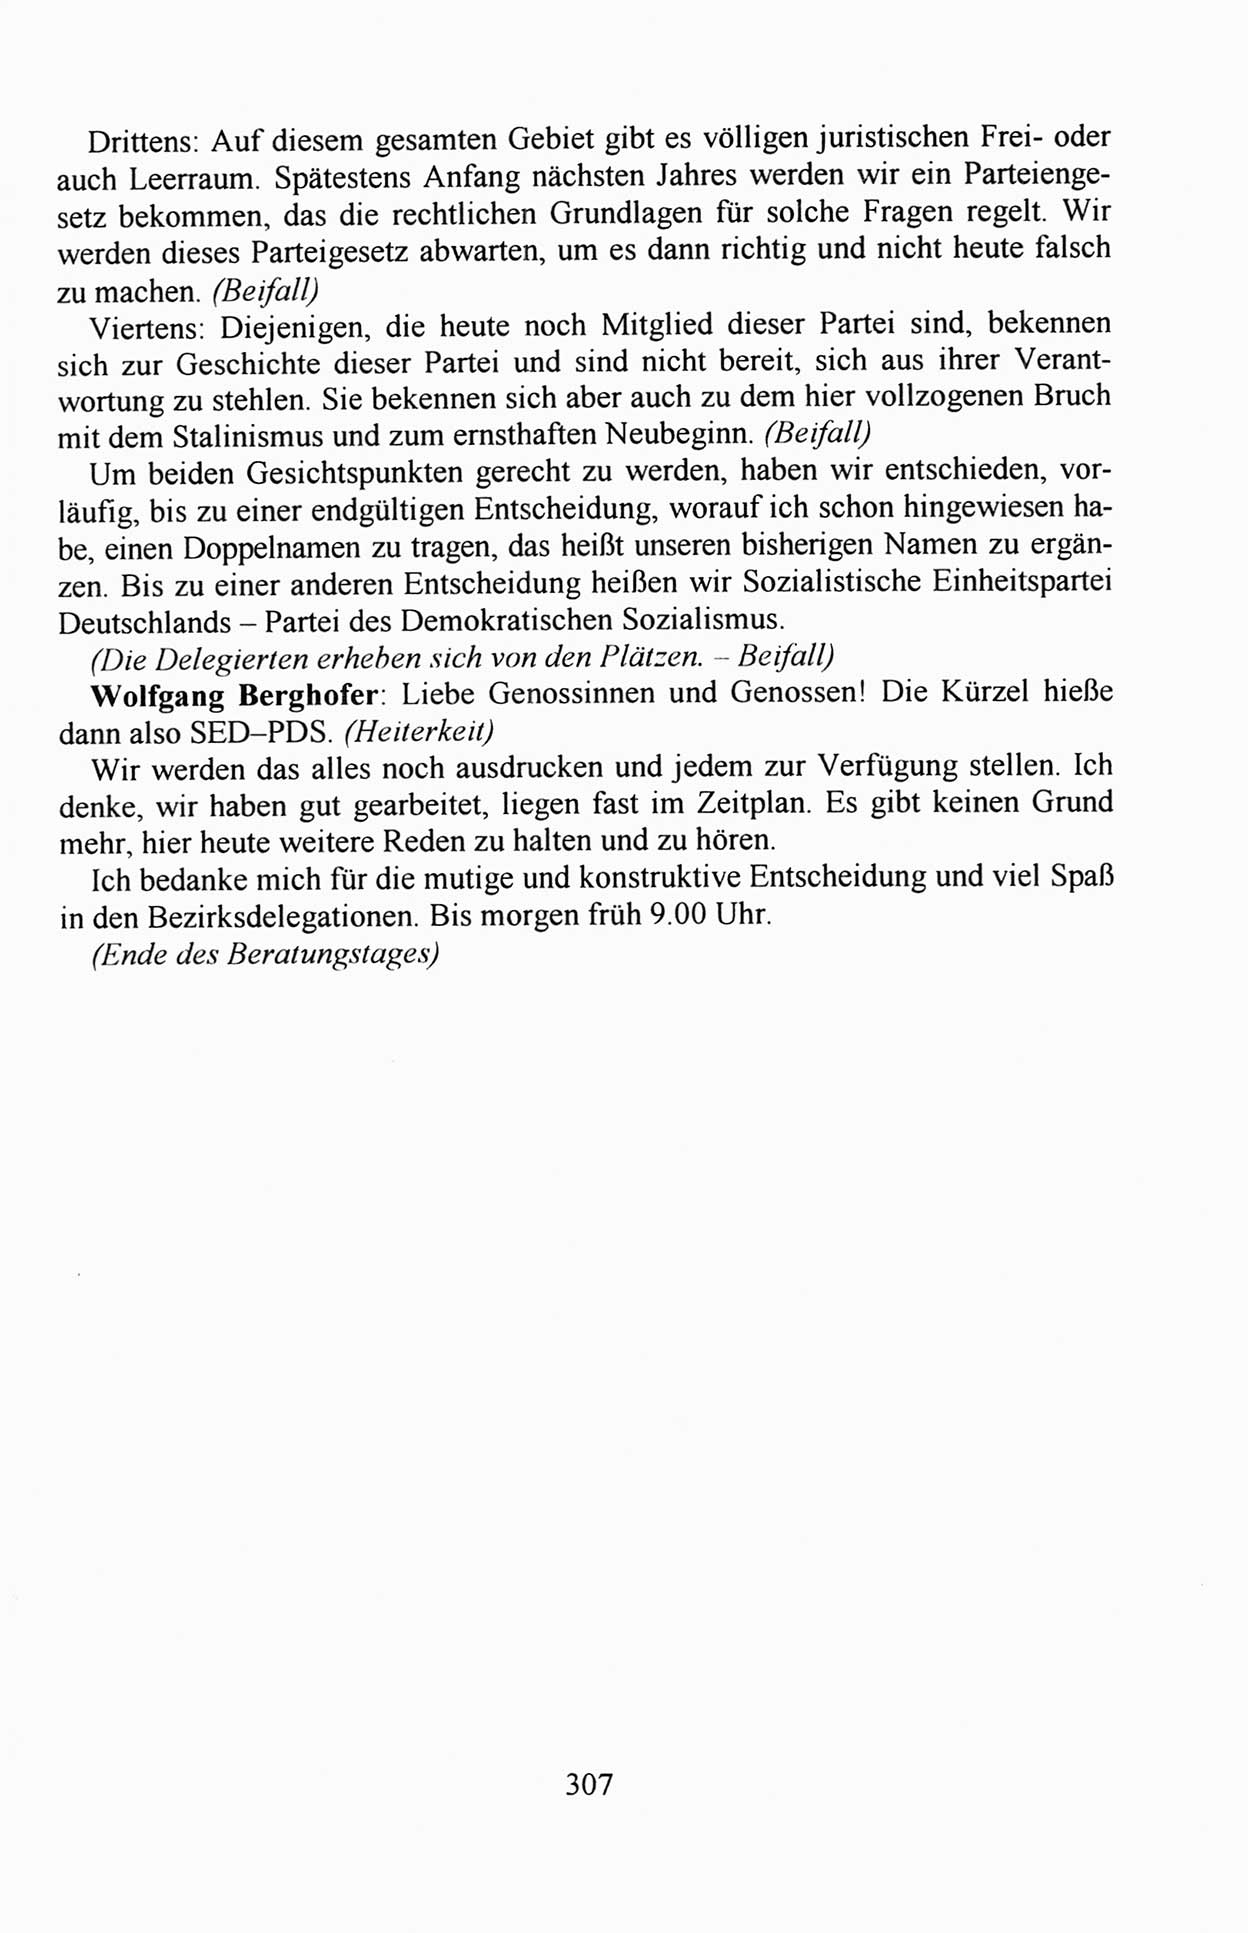 Außerordentlicher Parteitag der SED/PDS (Sozialistische Einheitspartei Deutschlands/Partei des Demokratischen Sozialismus) [Deutsche Demokratische Republik (DDR)], Protokoll der Beratungen am 8./9. und 16./17.12.1989 in Berlin 1989, Seite 307 (PT. SED/PDS DDR Prot. 1989, S. 307)